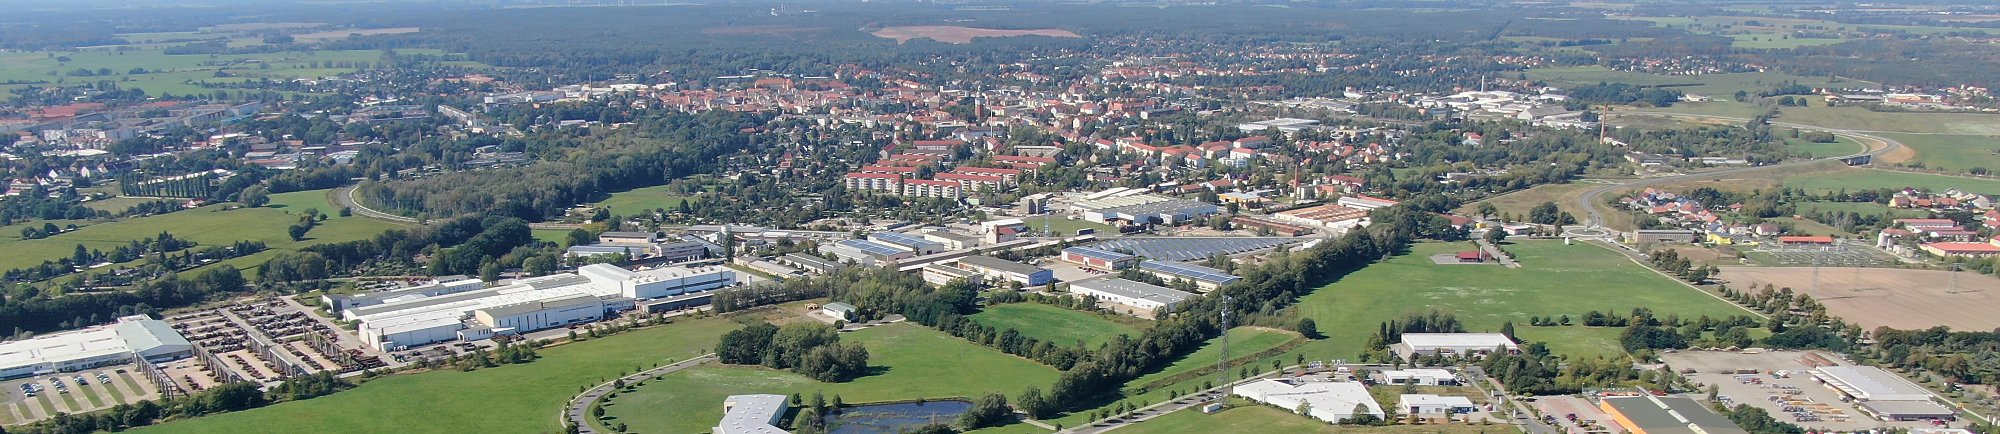 Gewerbegebiet Massen, Luftbild, ©Amt Kleine Elster